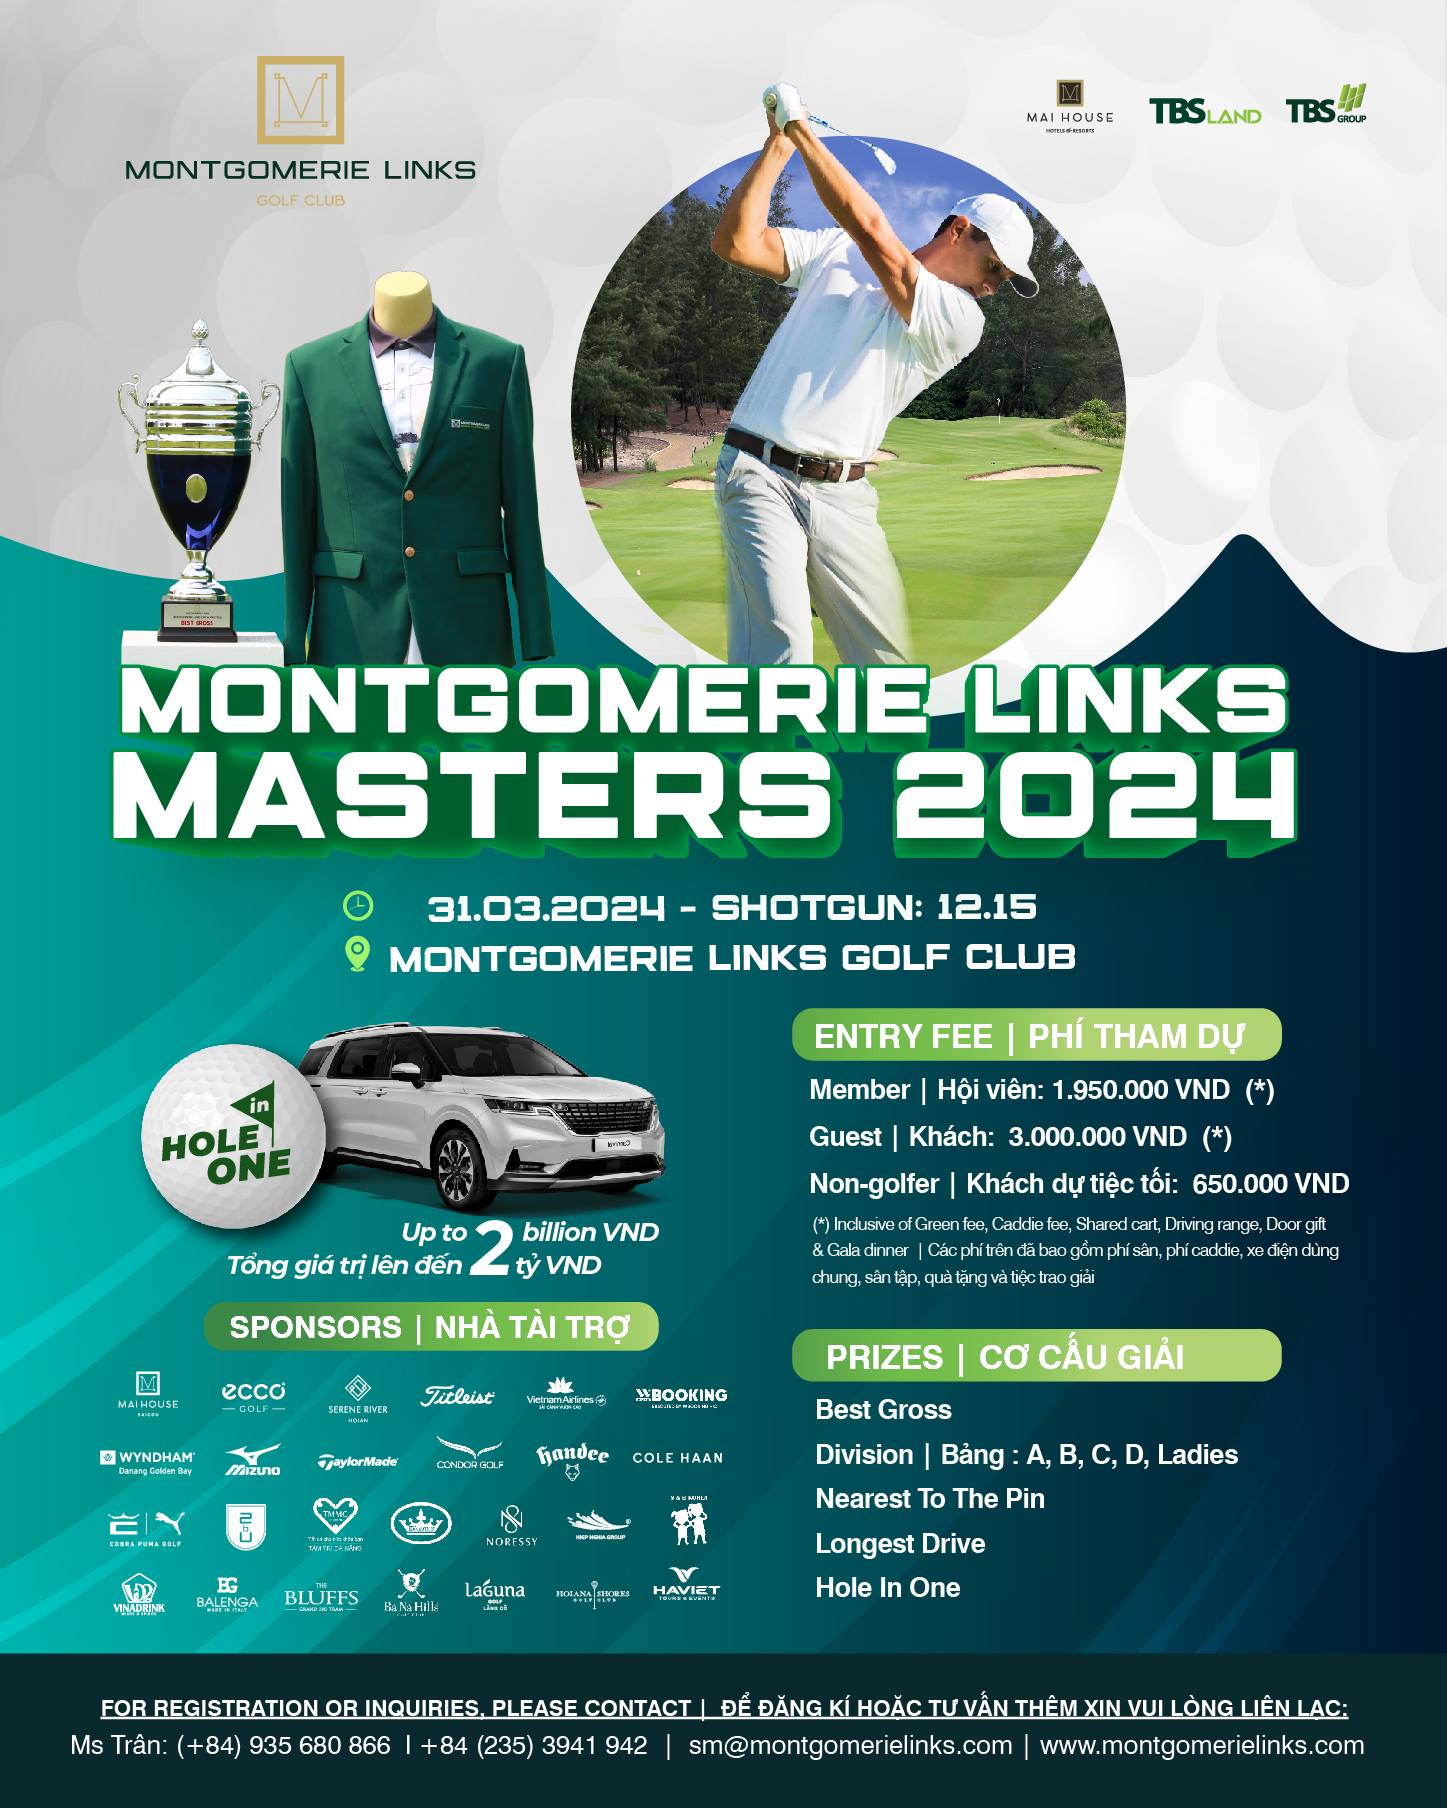 Montgomerie Links Masters 2024 chính thức khởi tranh vào 12:15 ngày 31 tháng 03 năm 2024